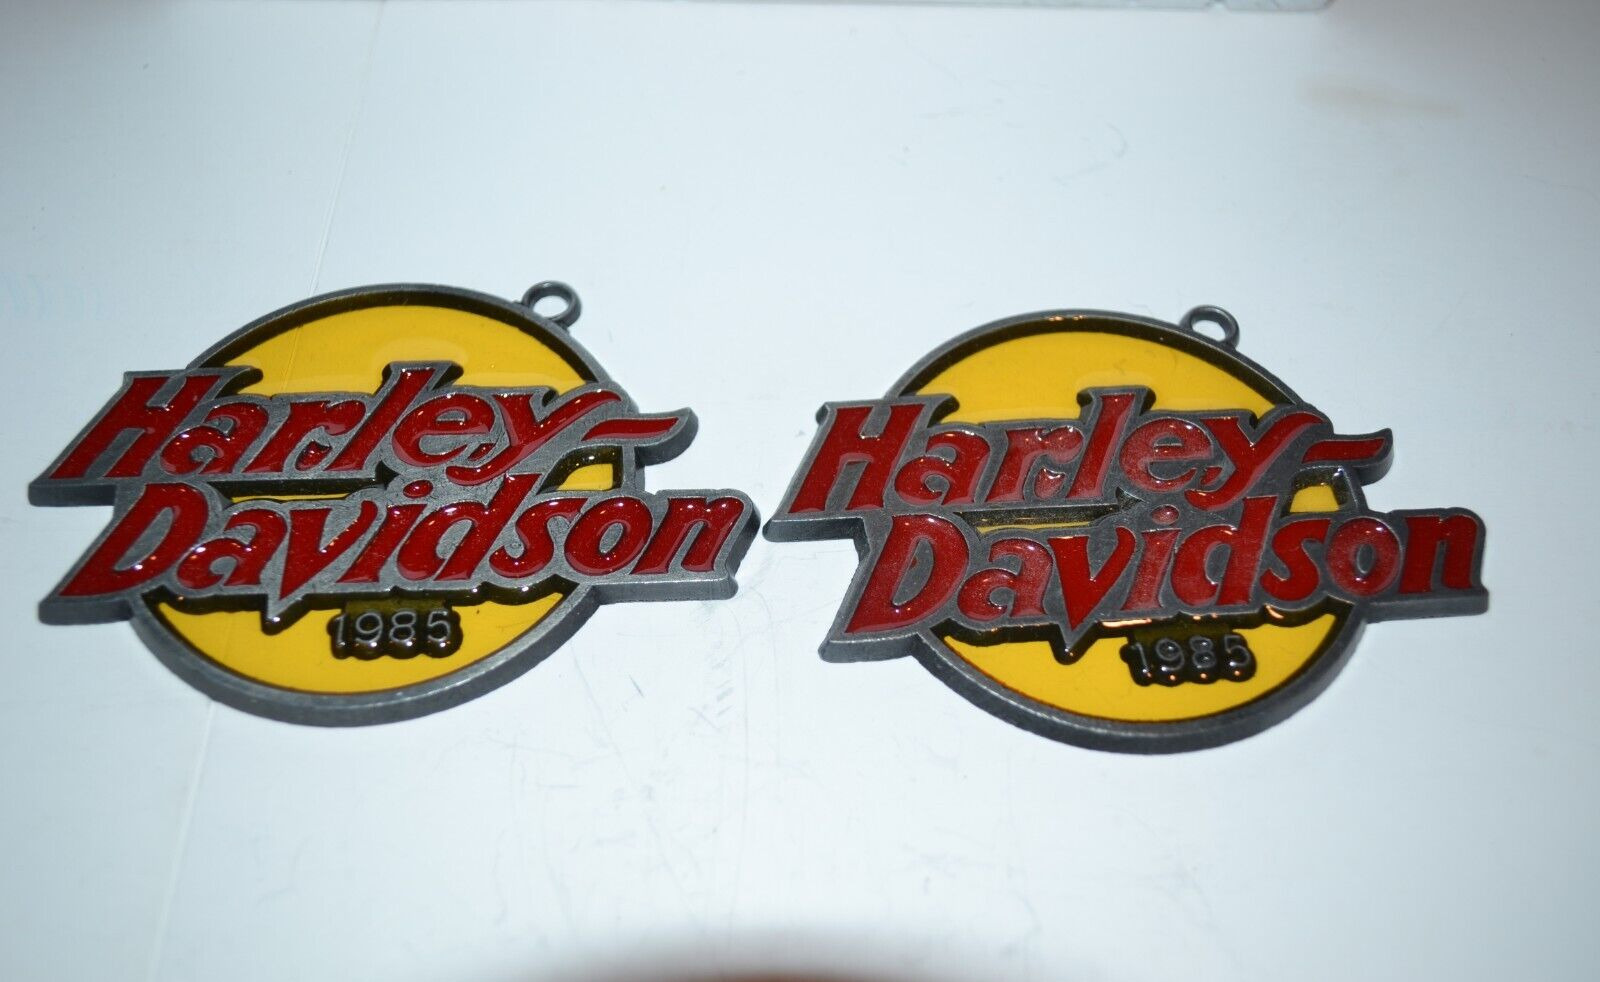 Harley Davidson 1985 Dealer Only VTG Logo Christmas Ornament RARE Stained Glass